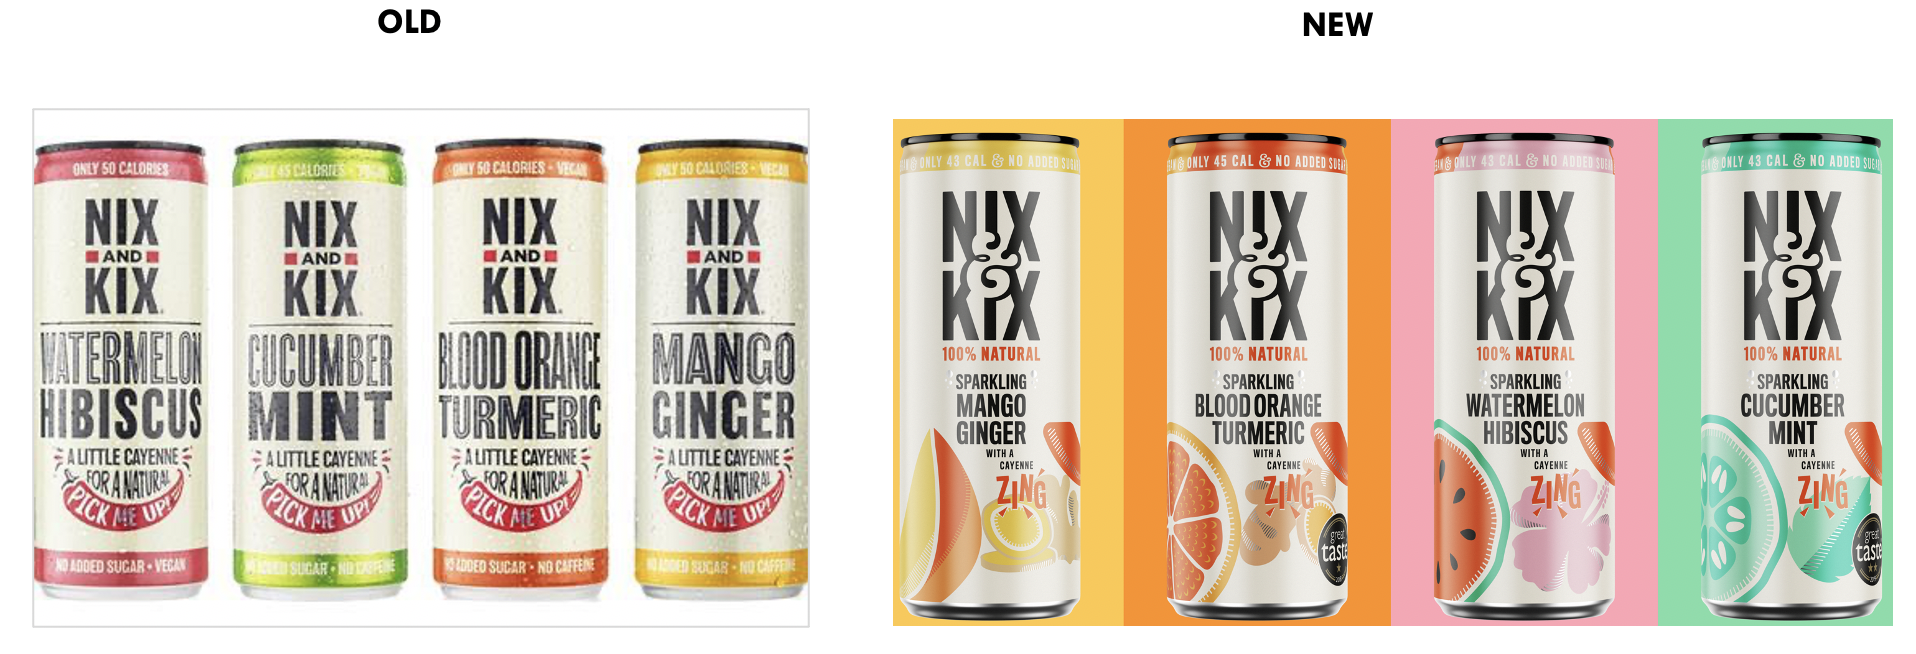 Nix & Kix packs